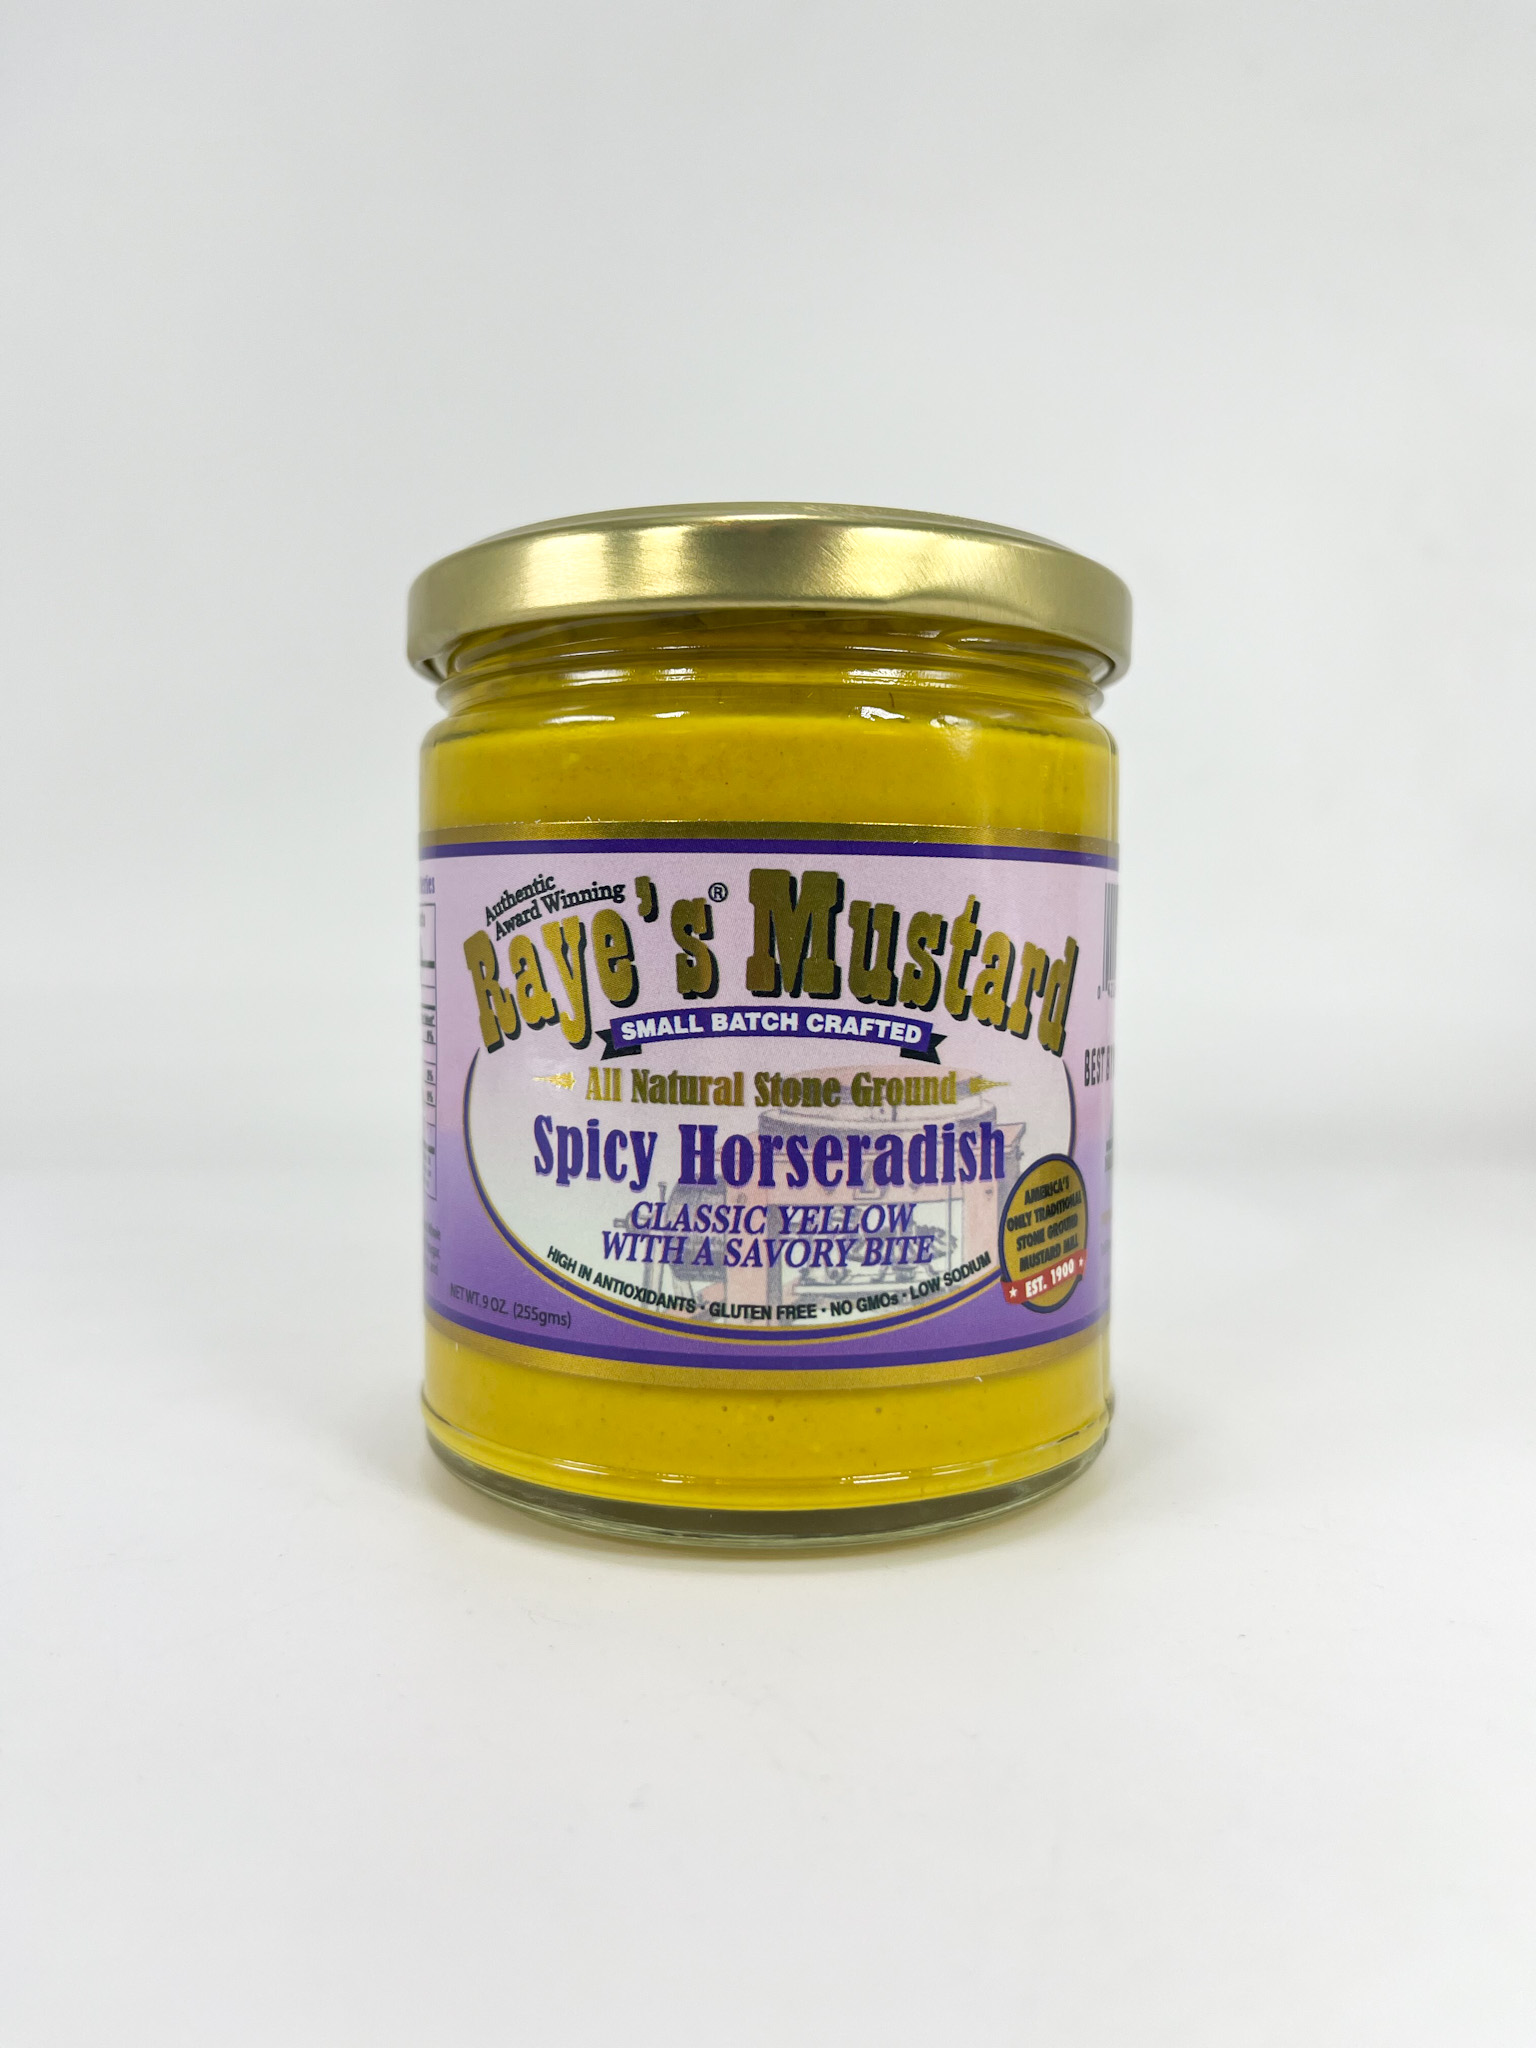 Raye's Mustard